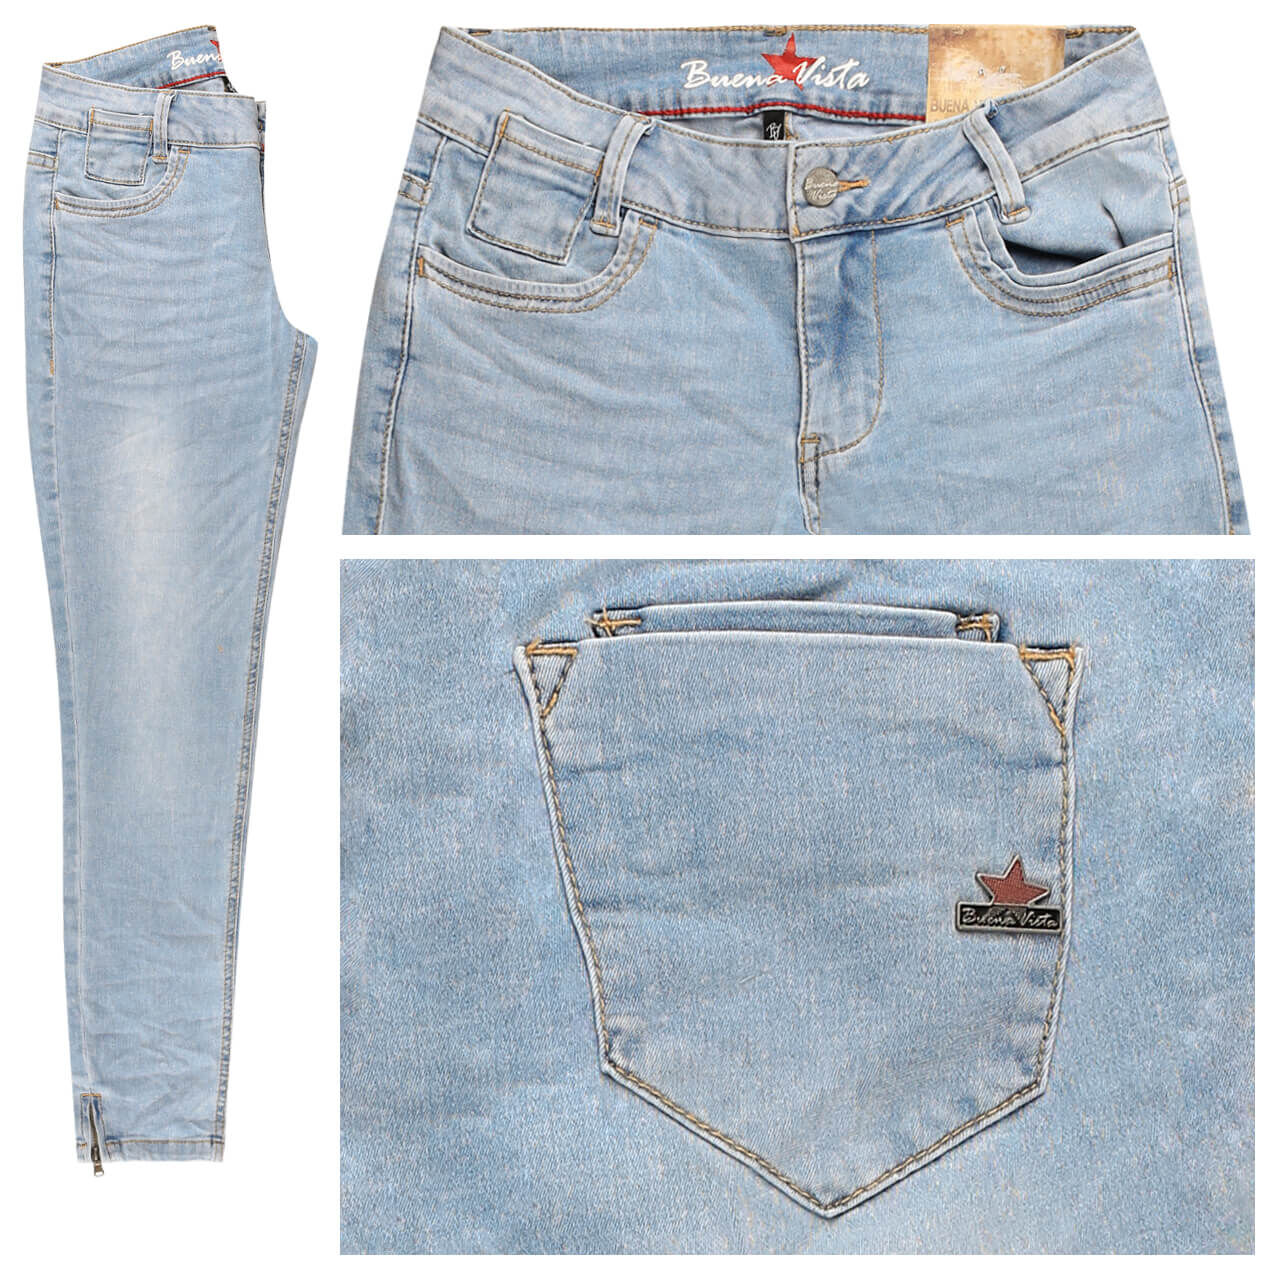 Buena Vista Jeans Kim-Zip V 7/8 Cozy Denim für Damen in Hellblau angewaschen, FarbNr.: 6027